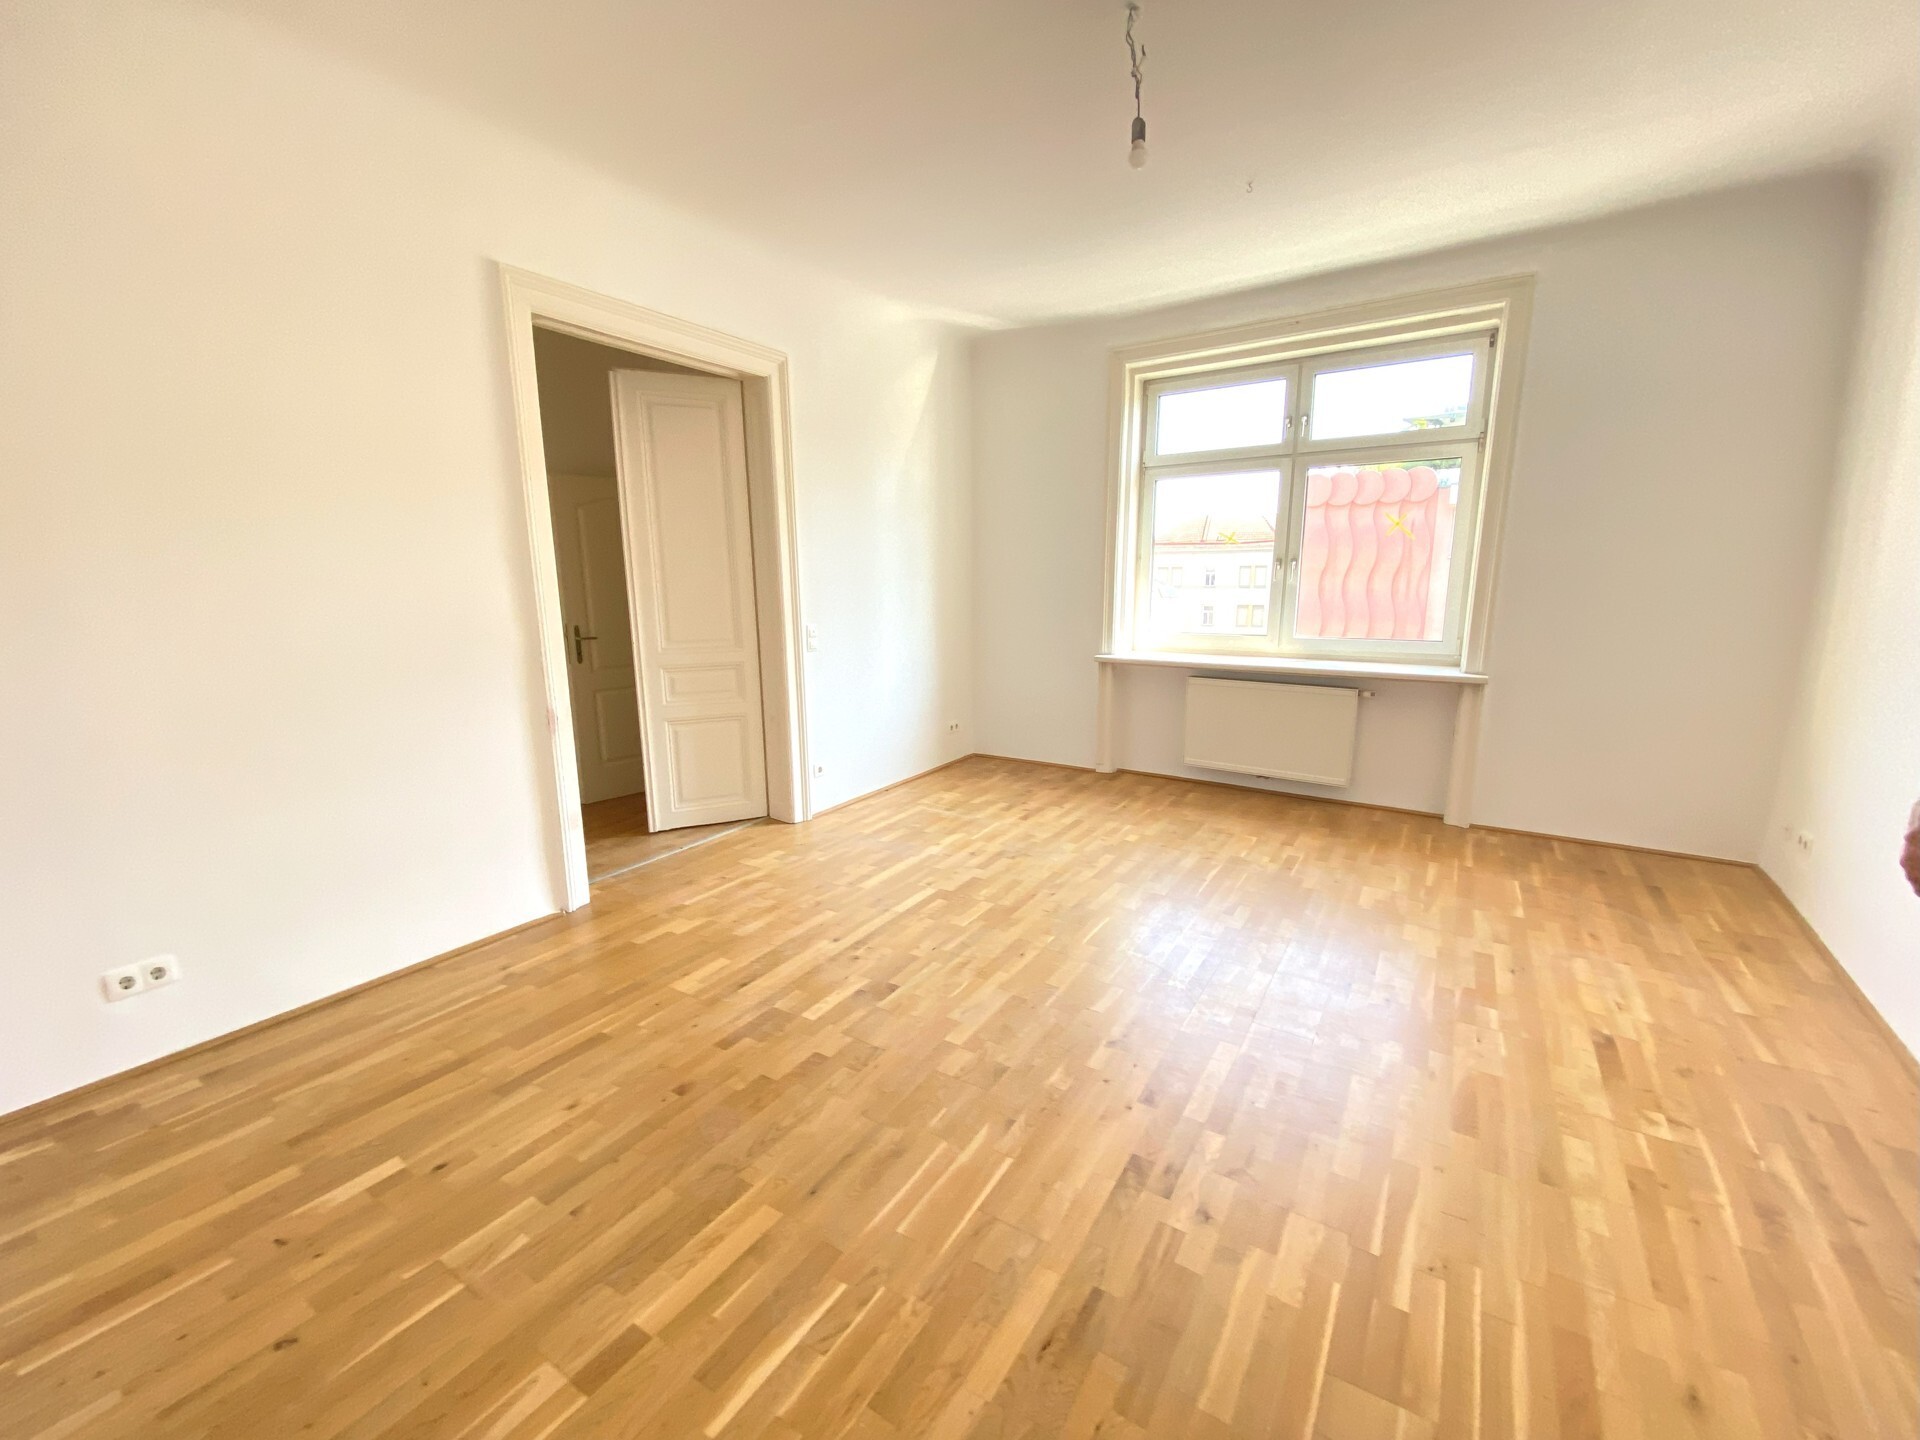 Ruhige 2-Zimmer Altbauwohnung mit moderner Einbauküche und Badezimmer - zu kaufen in 1030 Wien